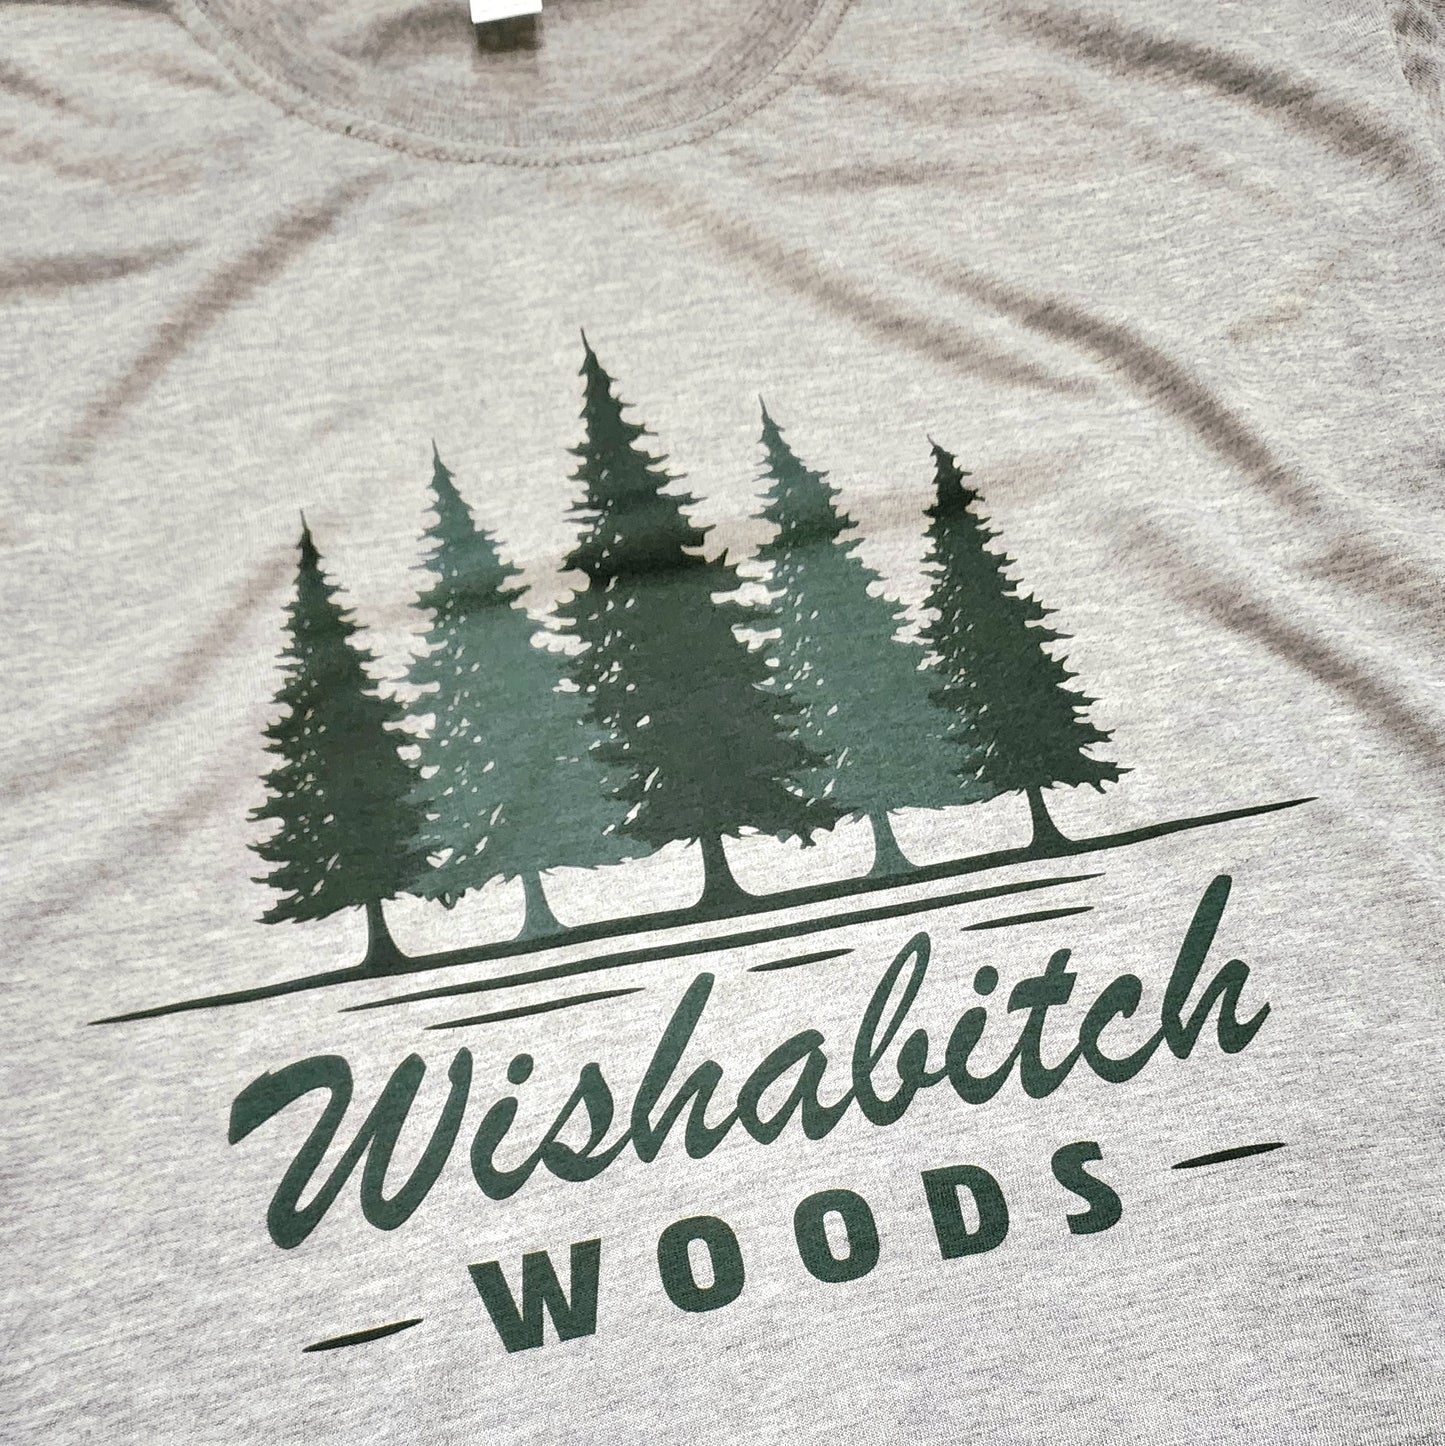 Wishabitch Woods Super Soft Comfy T-Shirt